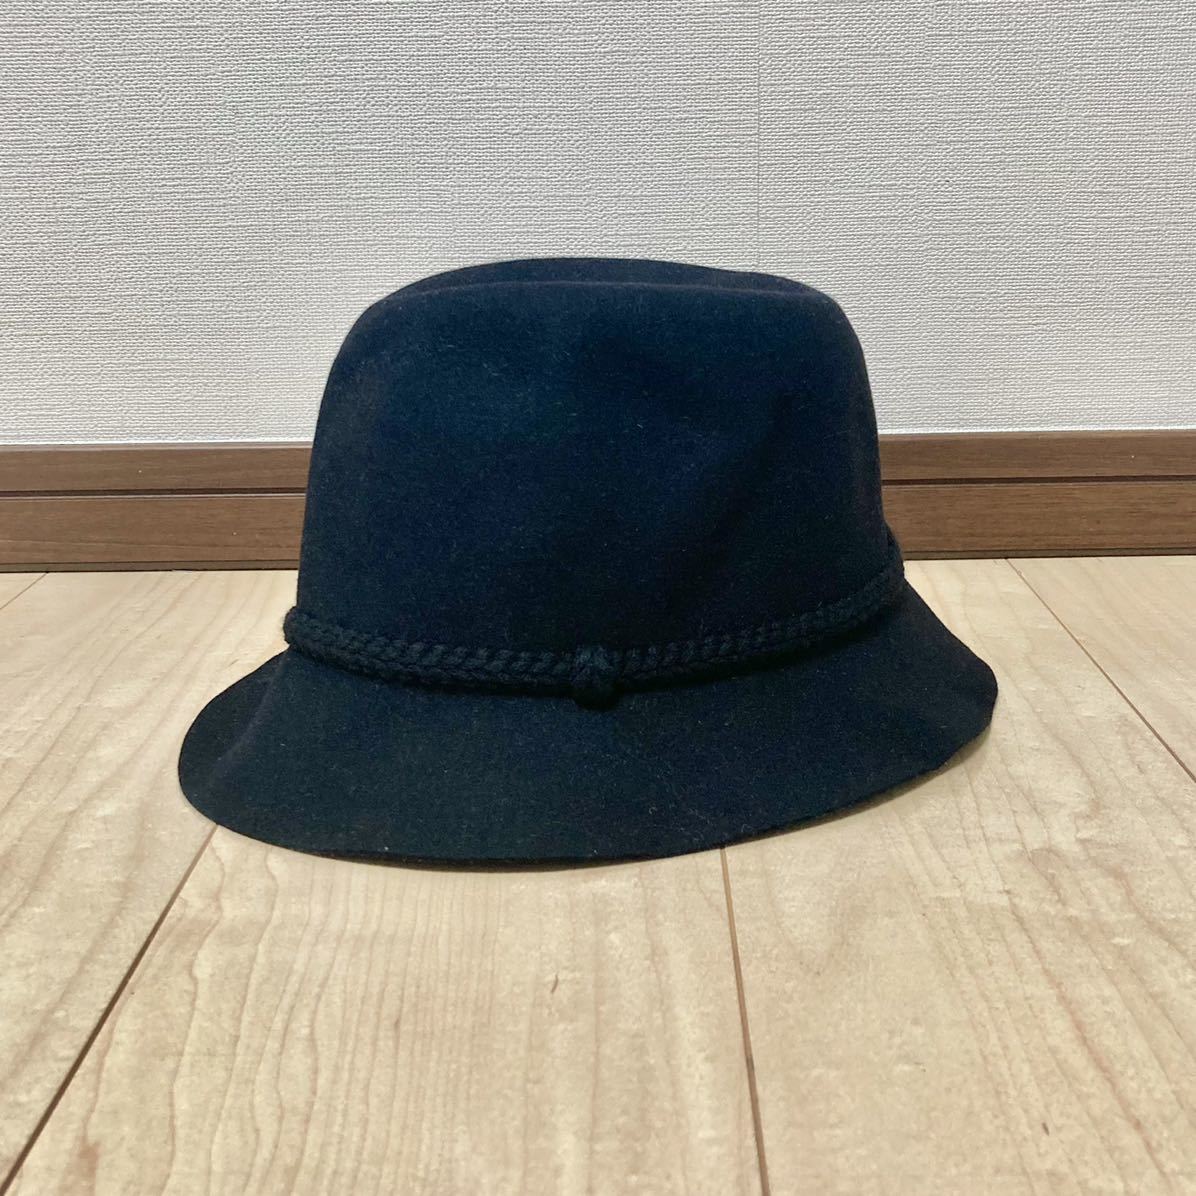 ヤフオク! -nonnative hat(ファッション)の中古品・新品・古着一覧